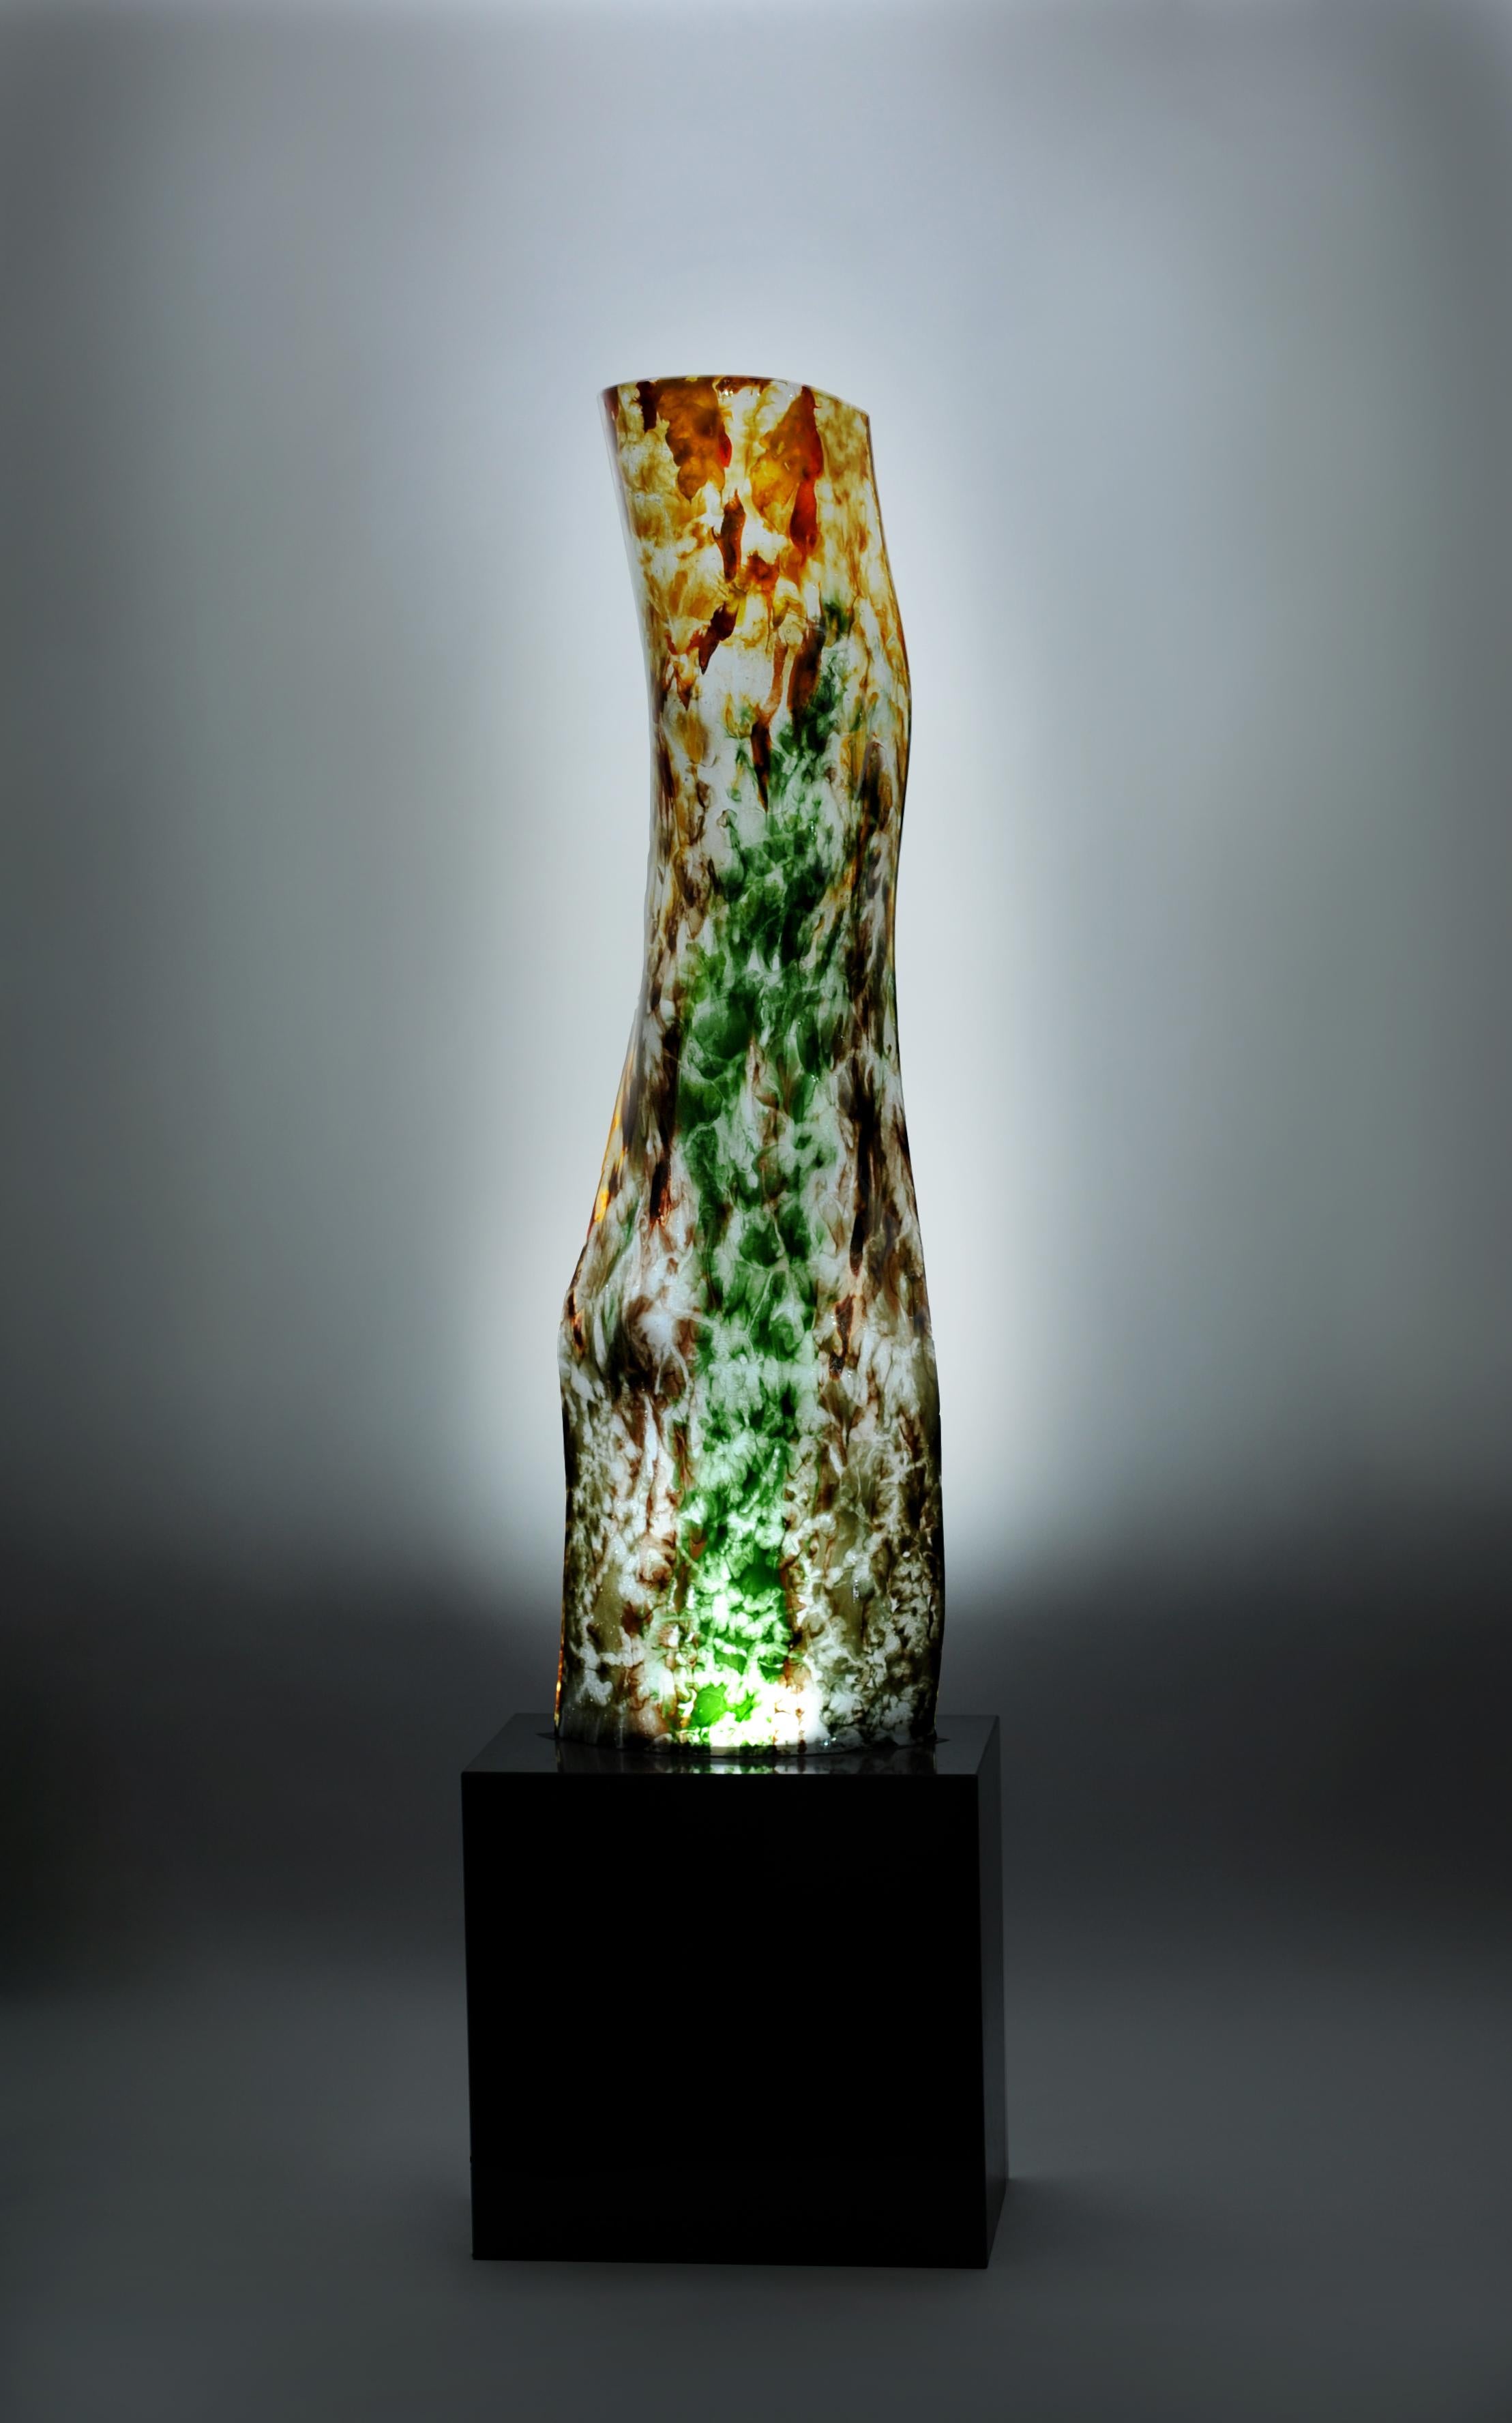 Jimmiz Brainz Lampe mit Granitsockel. 
Dieses Stück aus gekochtem Glas gehört zu der von Orfeo Quagliata entworfenen Kollektion Jimmiz Brains. 
Exklusive Techniken des Künstlers. 100% handgefertigt mit hochwertigem Material. 
Dieses elegante